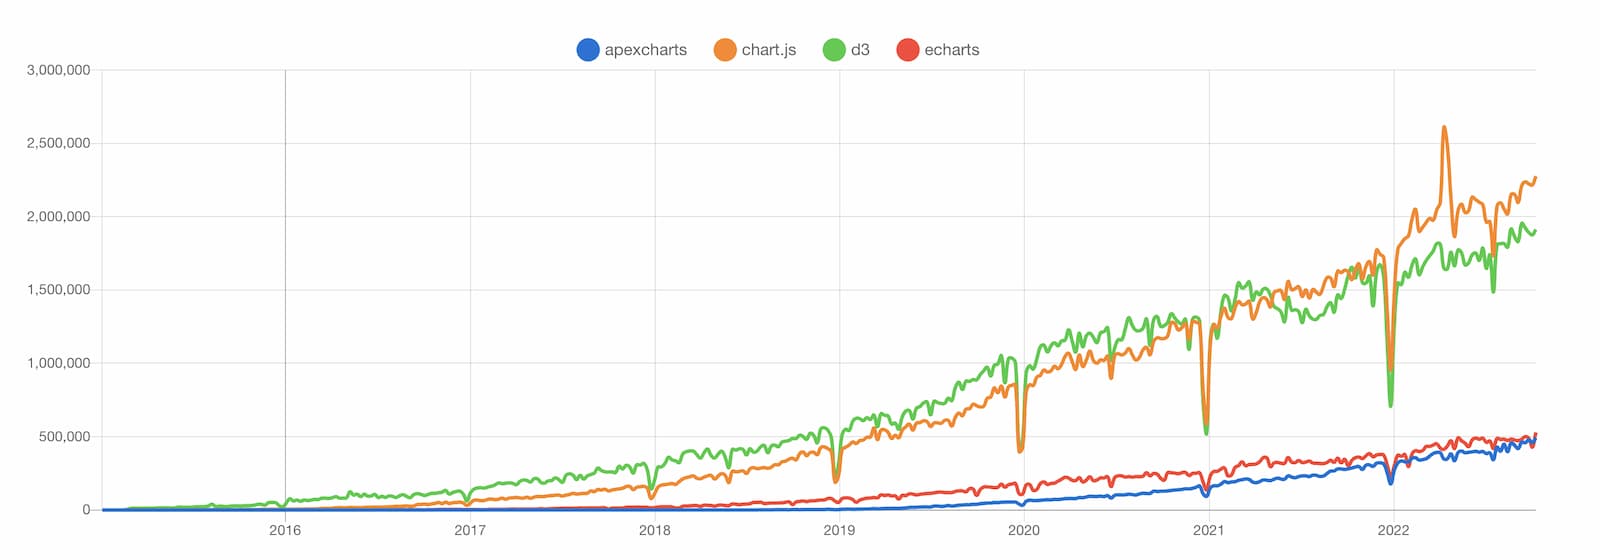 apexcharts vs chart.js vs d3 vs echarts